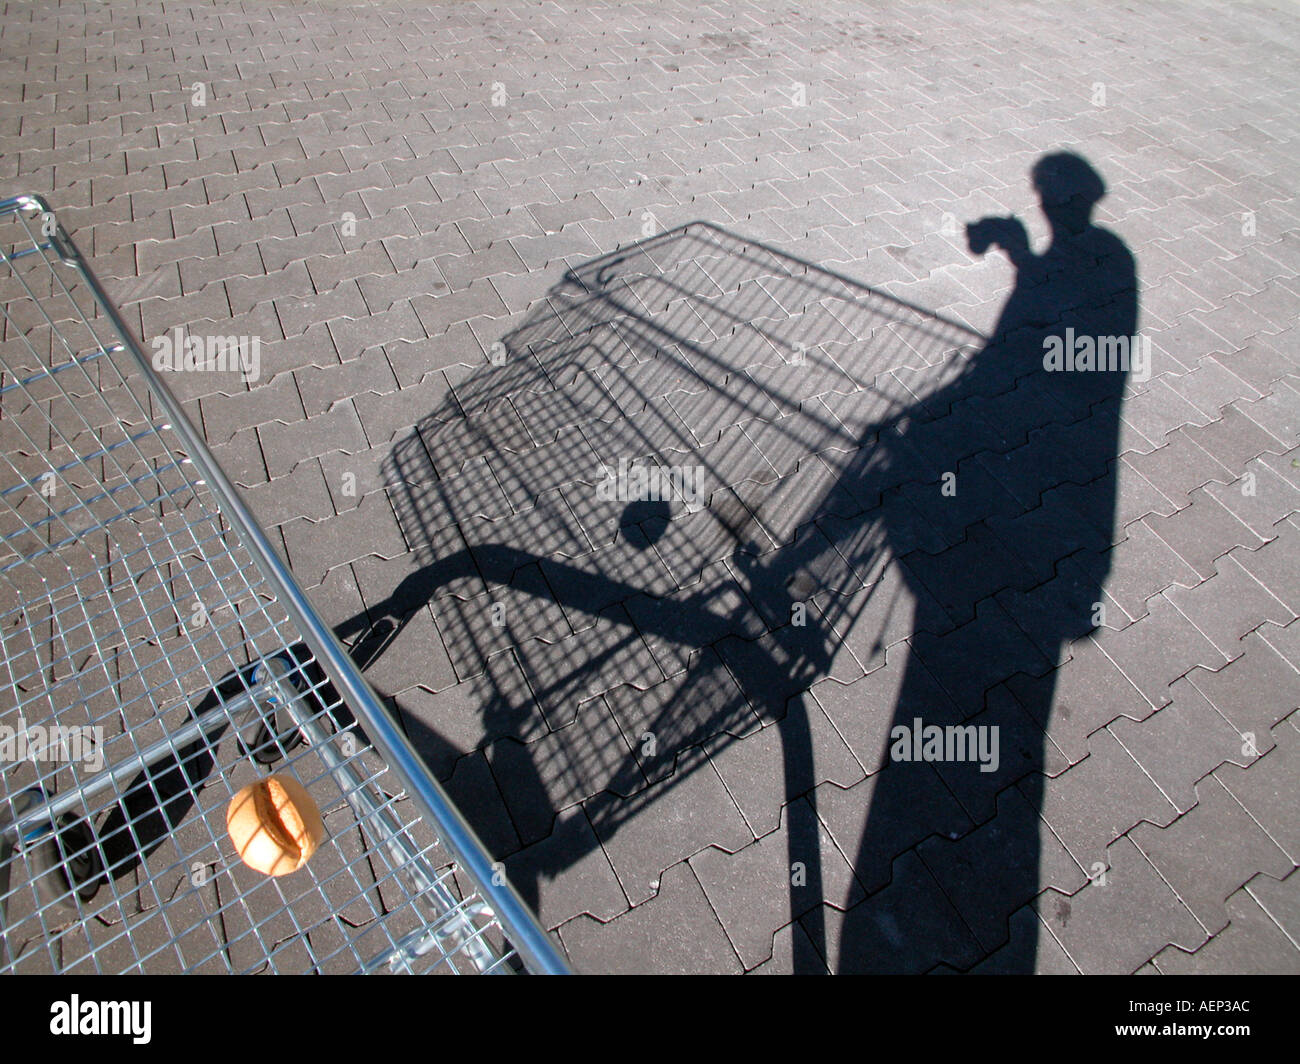 MR bun in the shopping cart Stock Photo